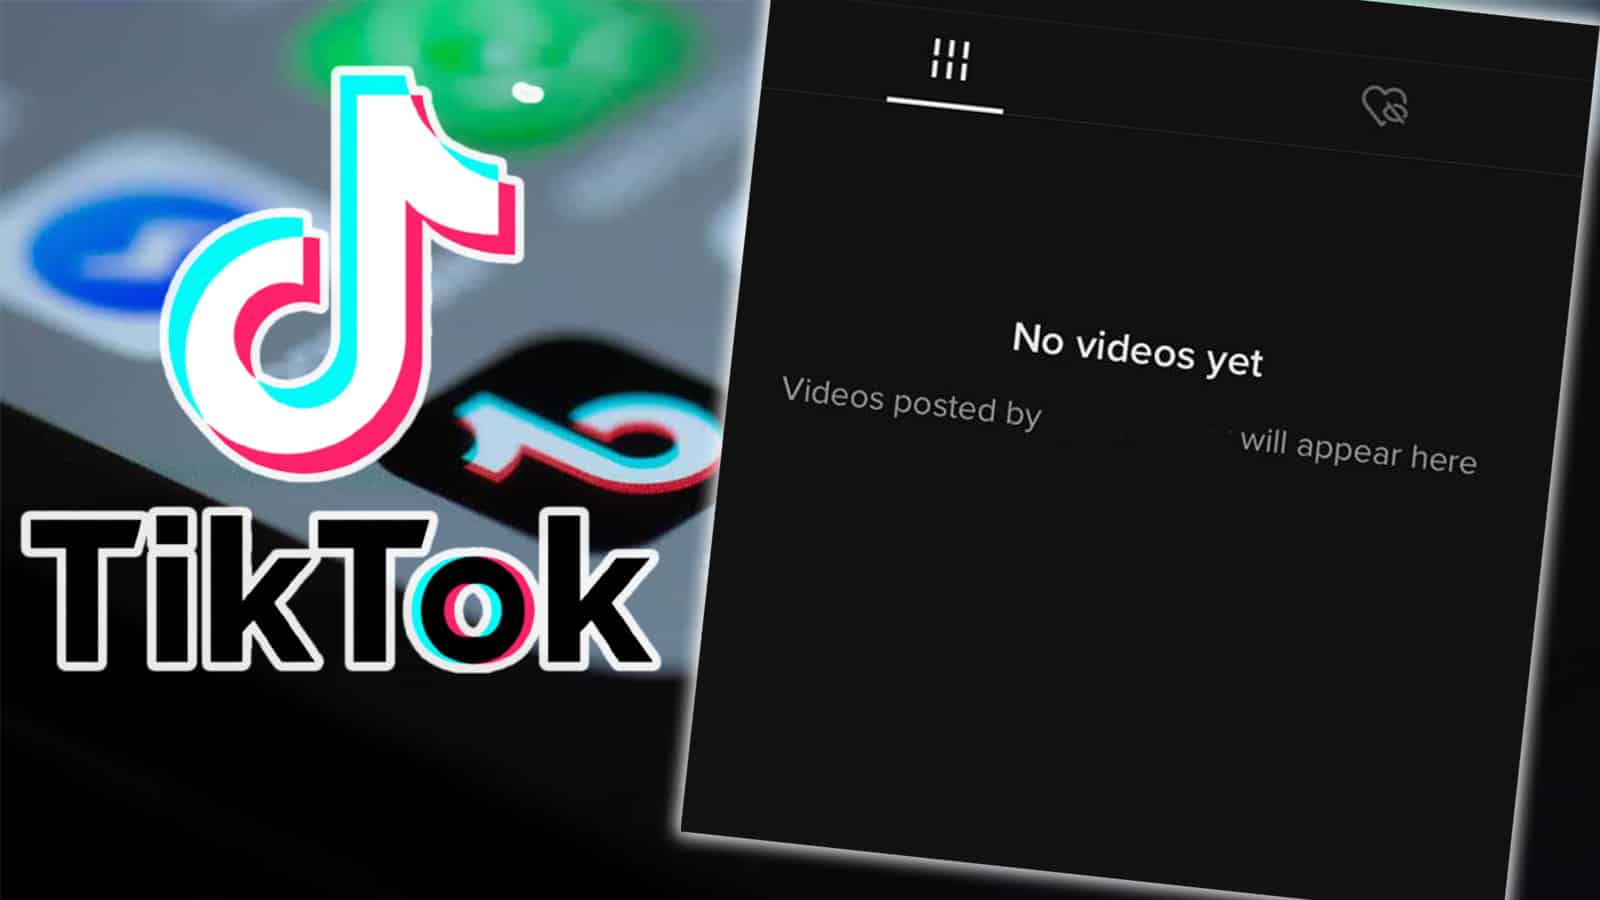 TikTok no videos yet glitch tiktok down outage